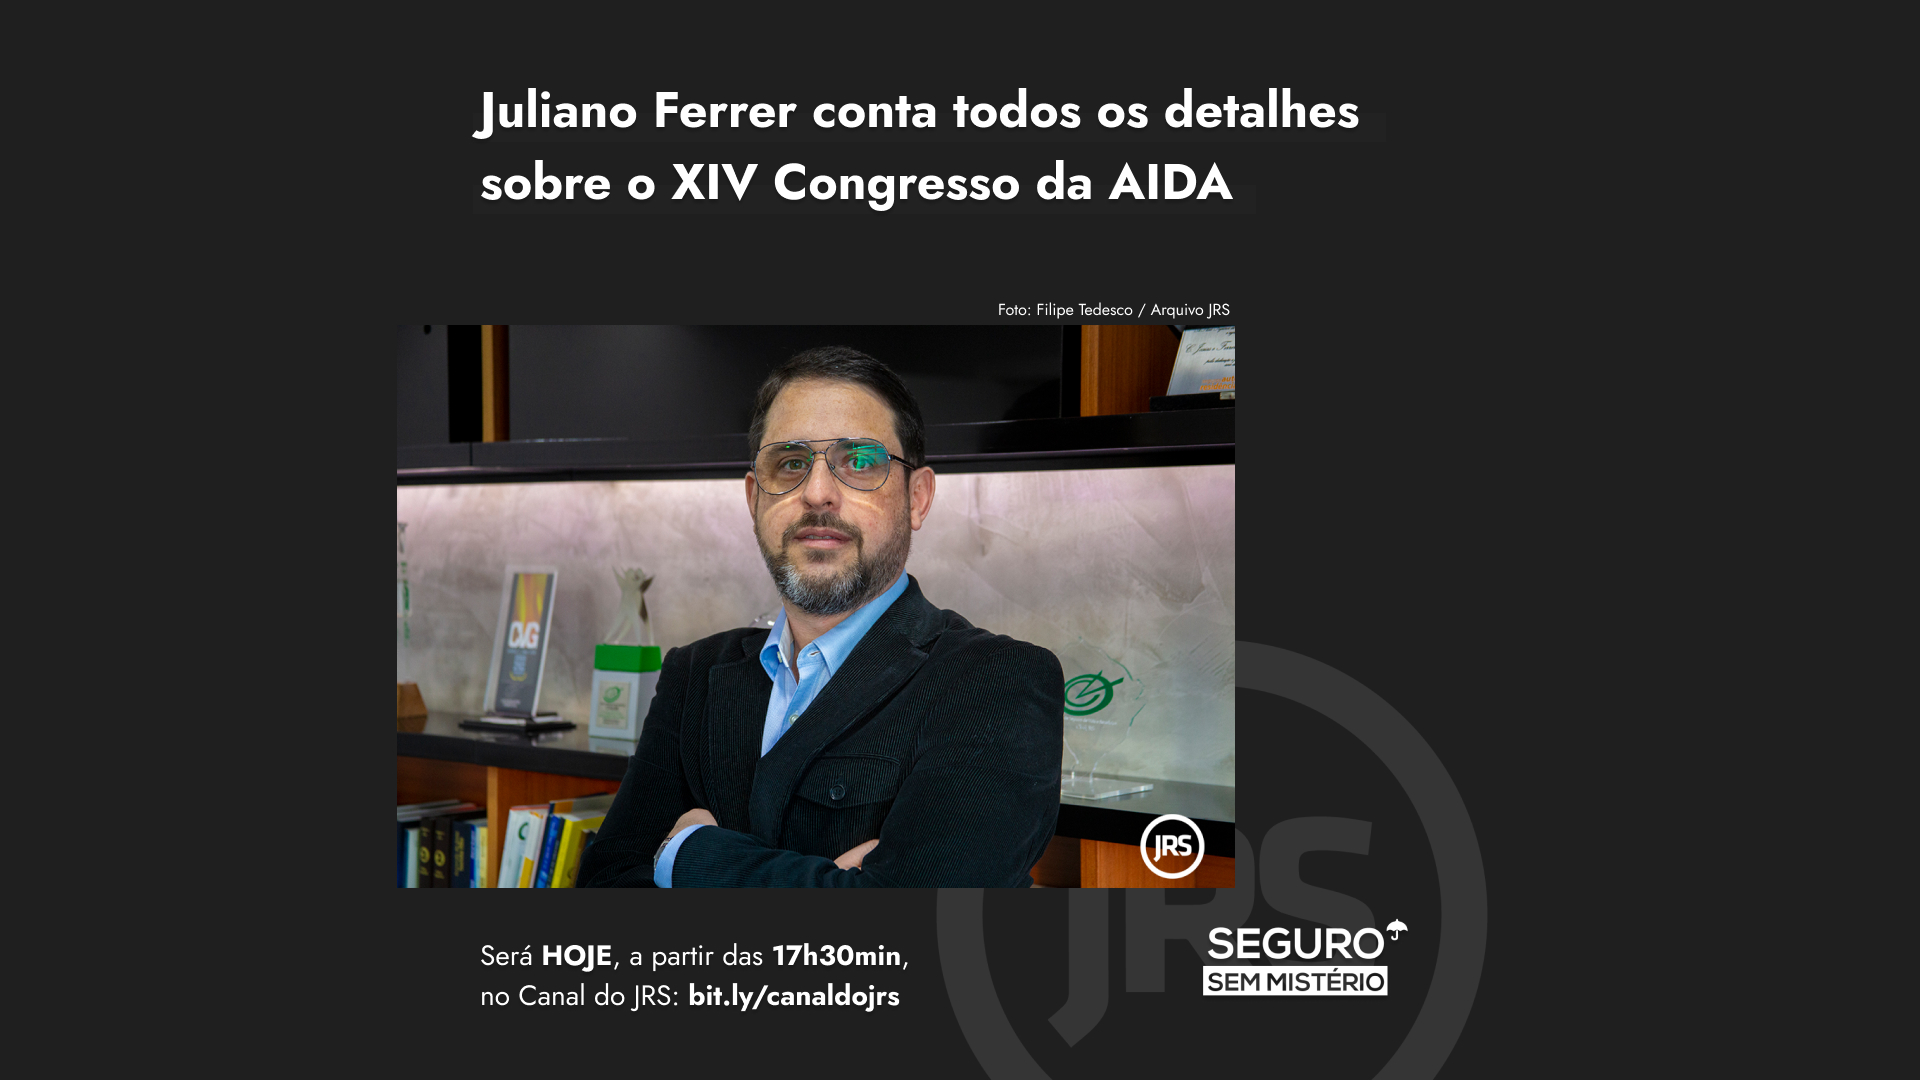 Juliano Ferrer explica todos os detalhes sobre o XIV Congresso da AIDA